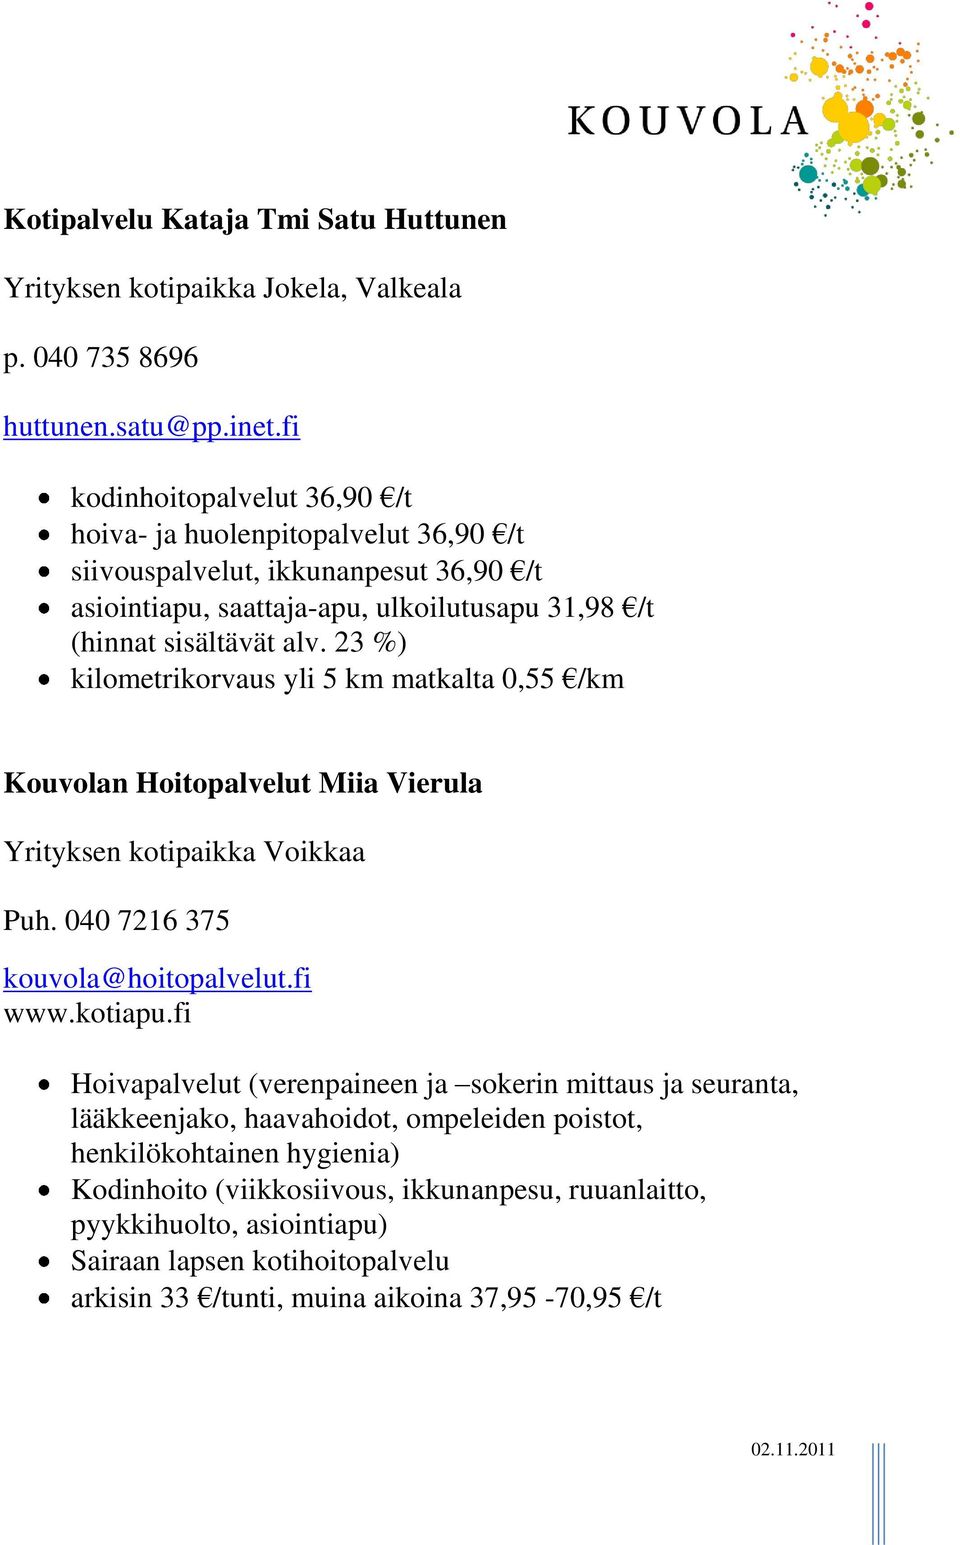 23 %) kilometrikorvaus yli 5 km matkalta 0,55 /km Kouvolan Hoitopalvelut Miia Vierula Yrityksen kotipaikka Voikkaa Puh. 040 7216 375 kouvola@hoitopalvelut.fi www.kotiapu.